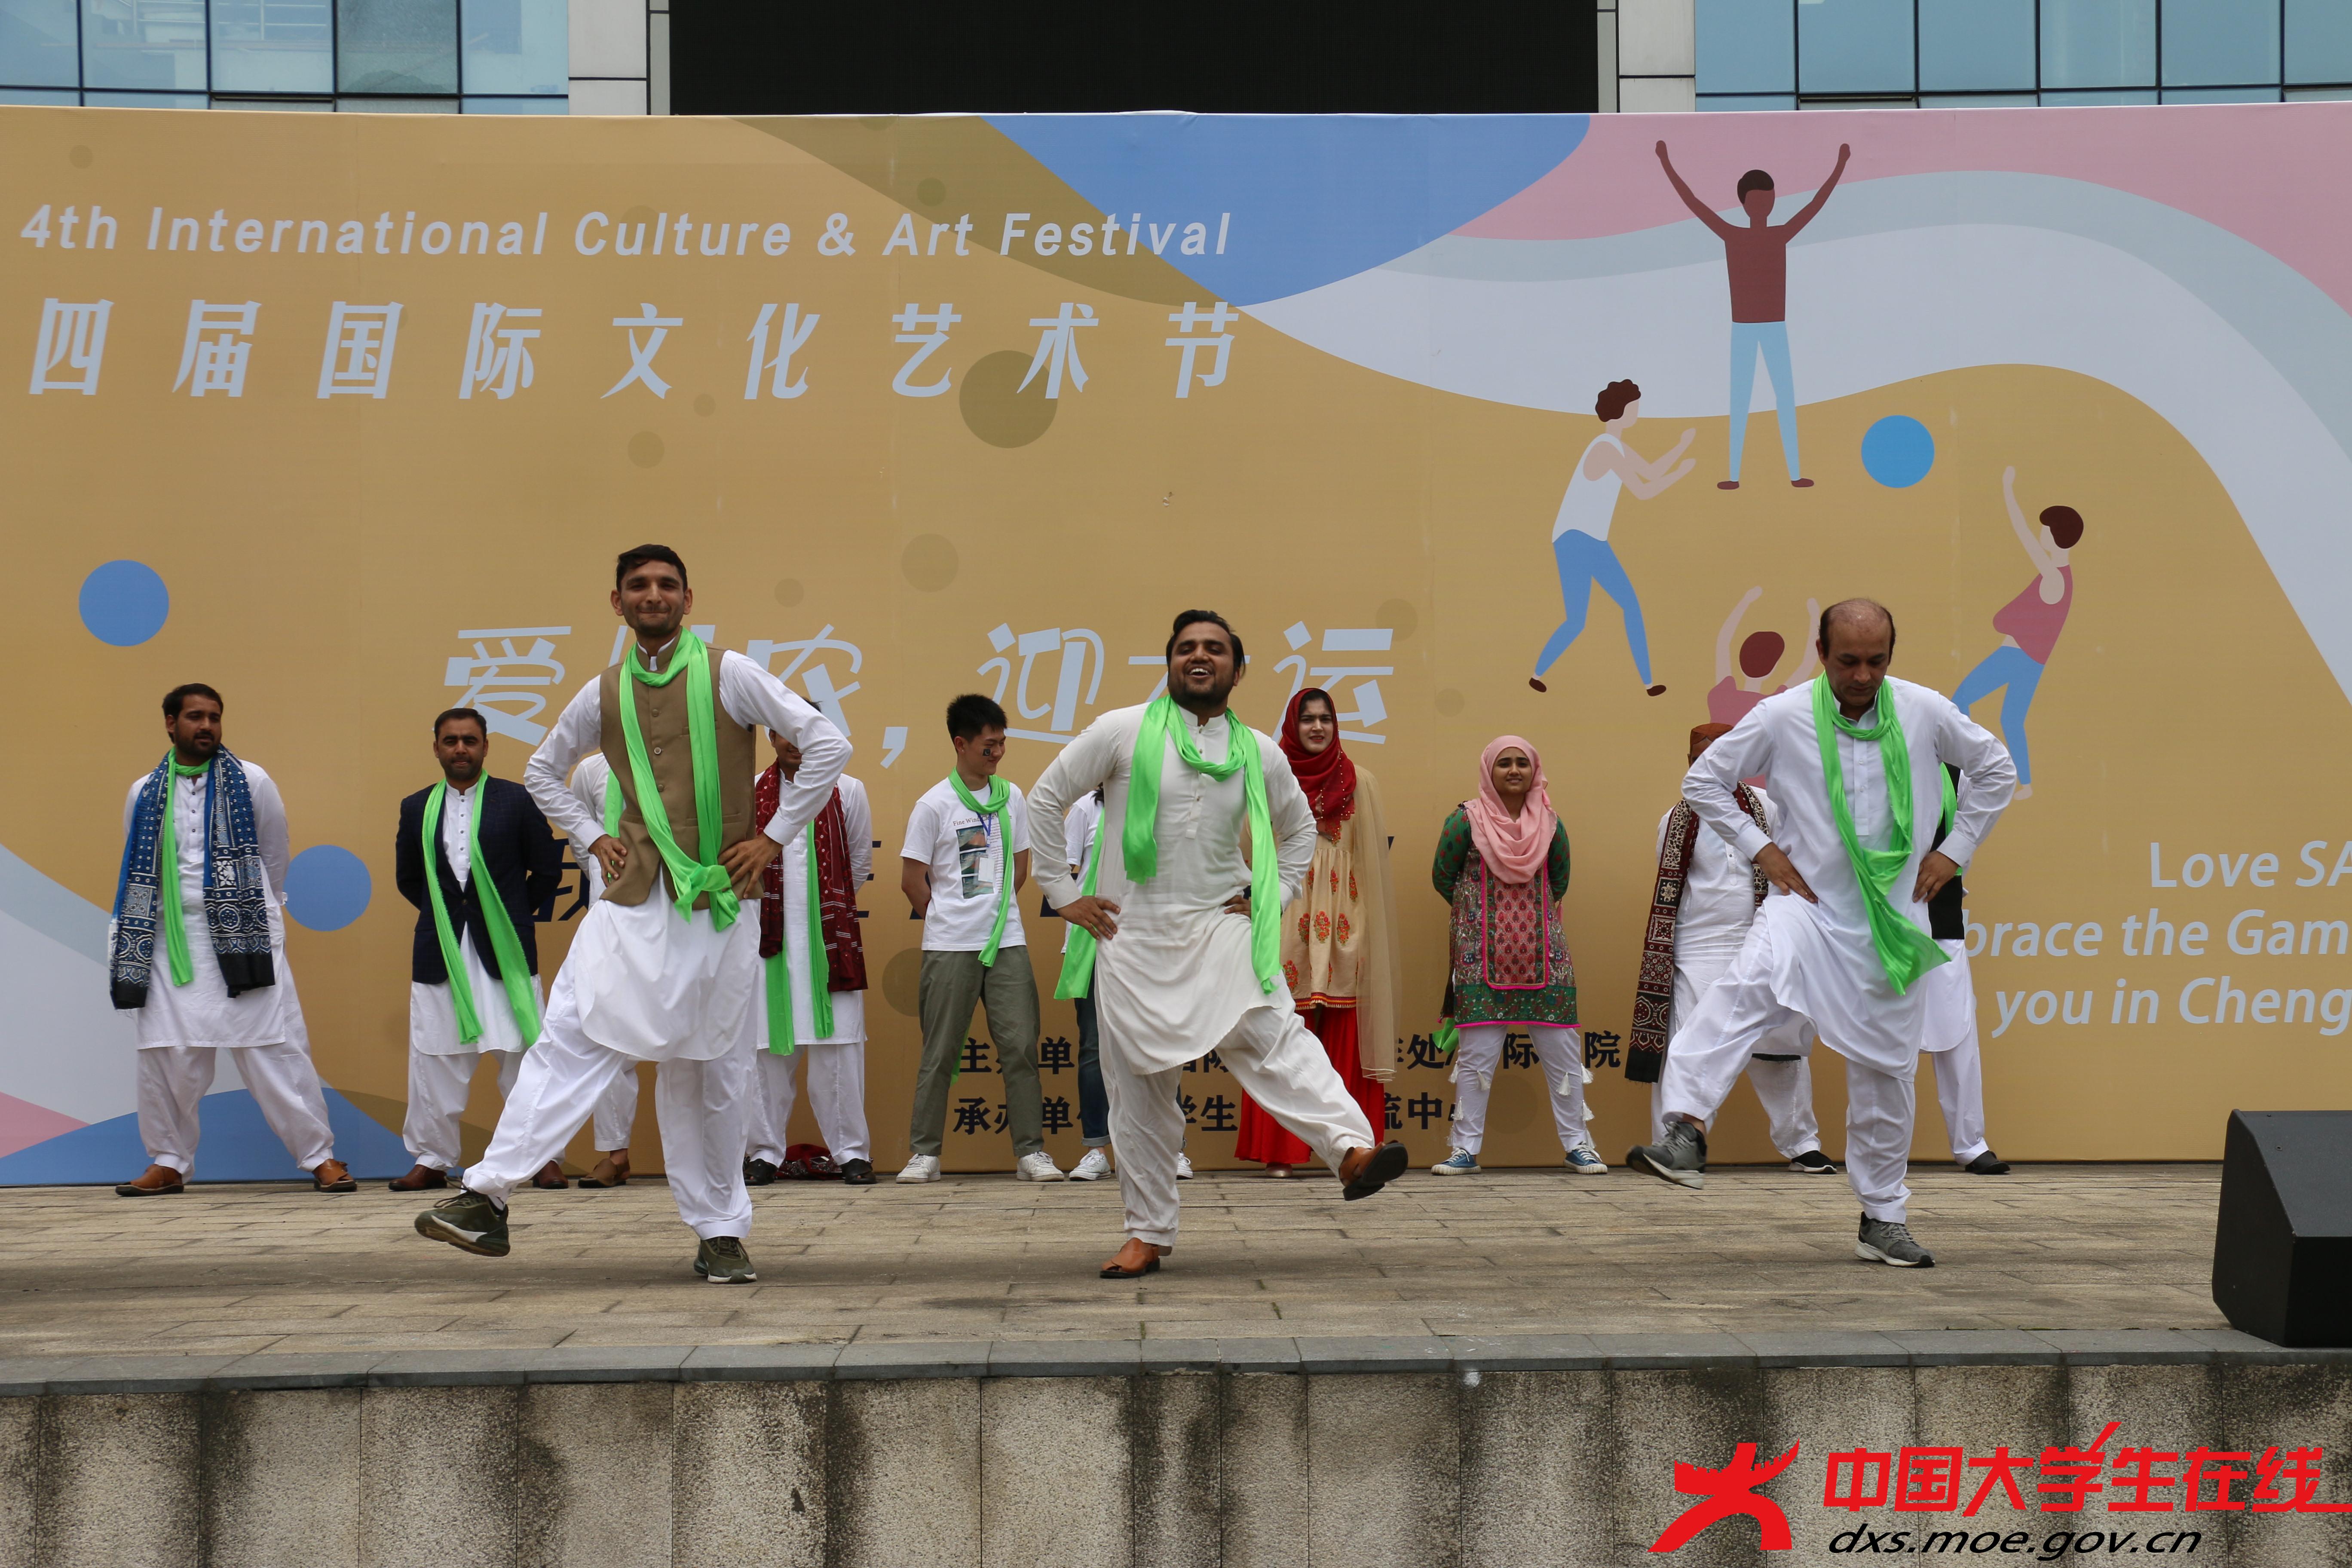 活泼可爱的巴基斯坦的留学生表演者们带来了具有巴基斯坦＂团队精神＂的特色舞蹈。憨态可掬的舞蹈动作和不断变化的步伐给台下的观众带来了欢声笑语。  樊天赦 摄